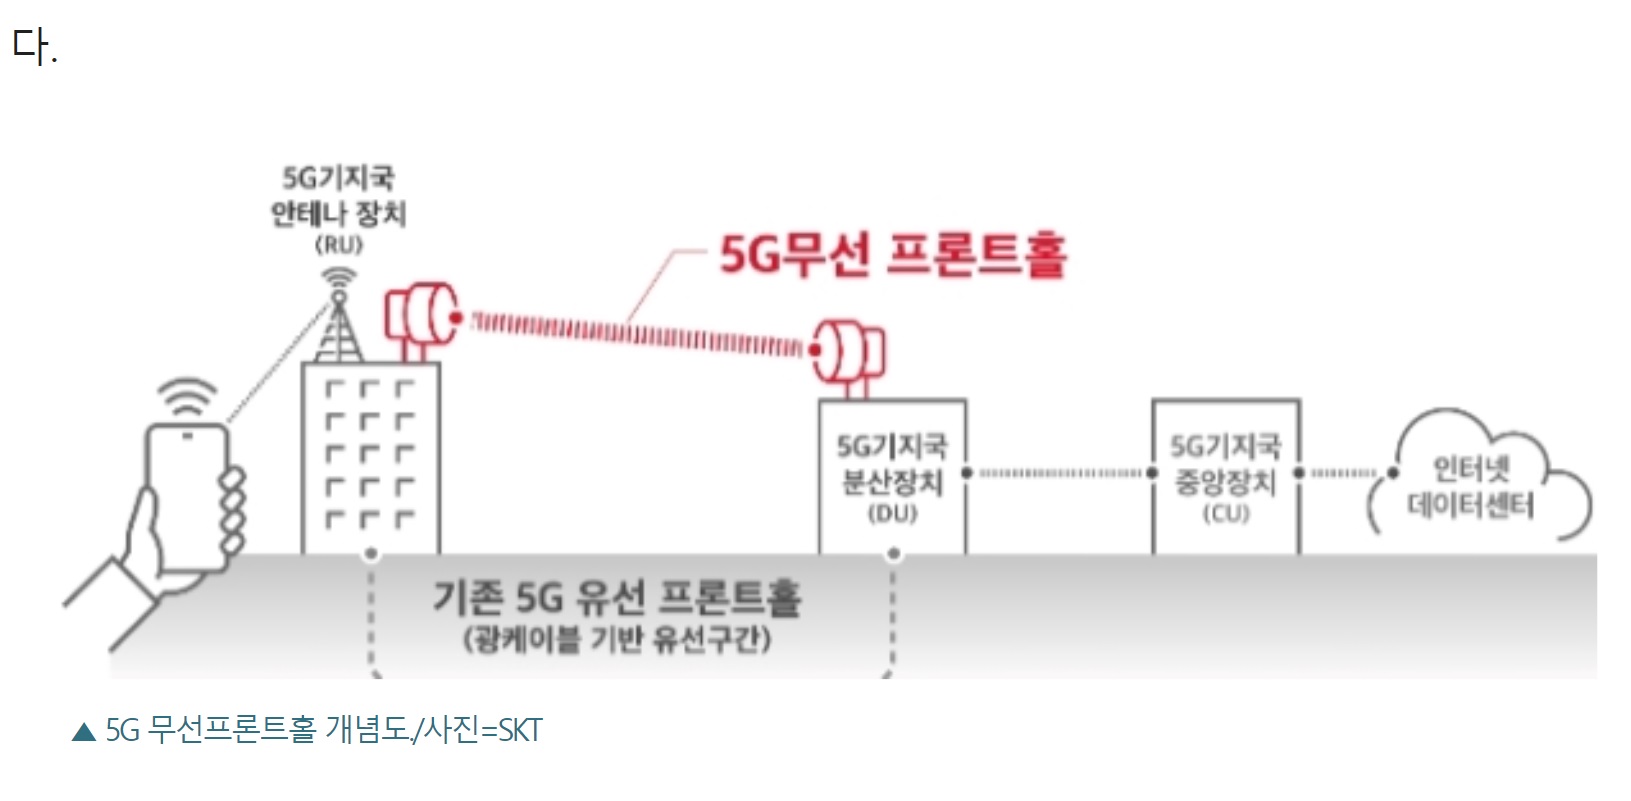 เกาหลีใต้แก้ปัญหาวางโครงข่าย 5G ในรูปแบบ Fronthaul หลังจากไม่สามารถวางระบบ Fiber ได้ 